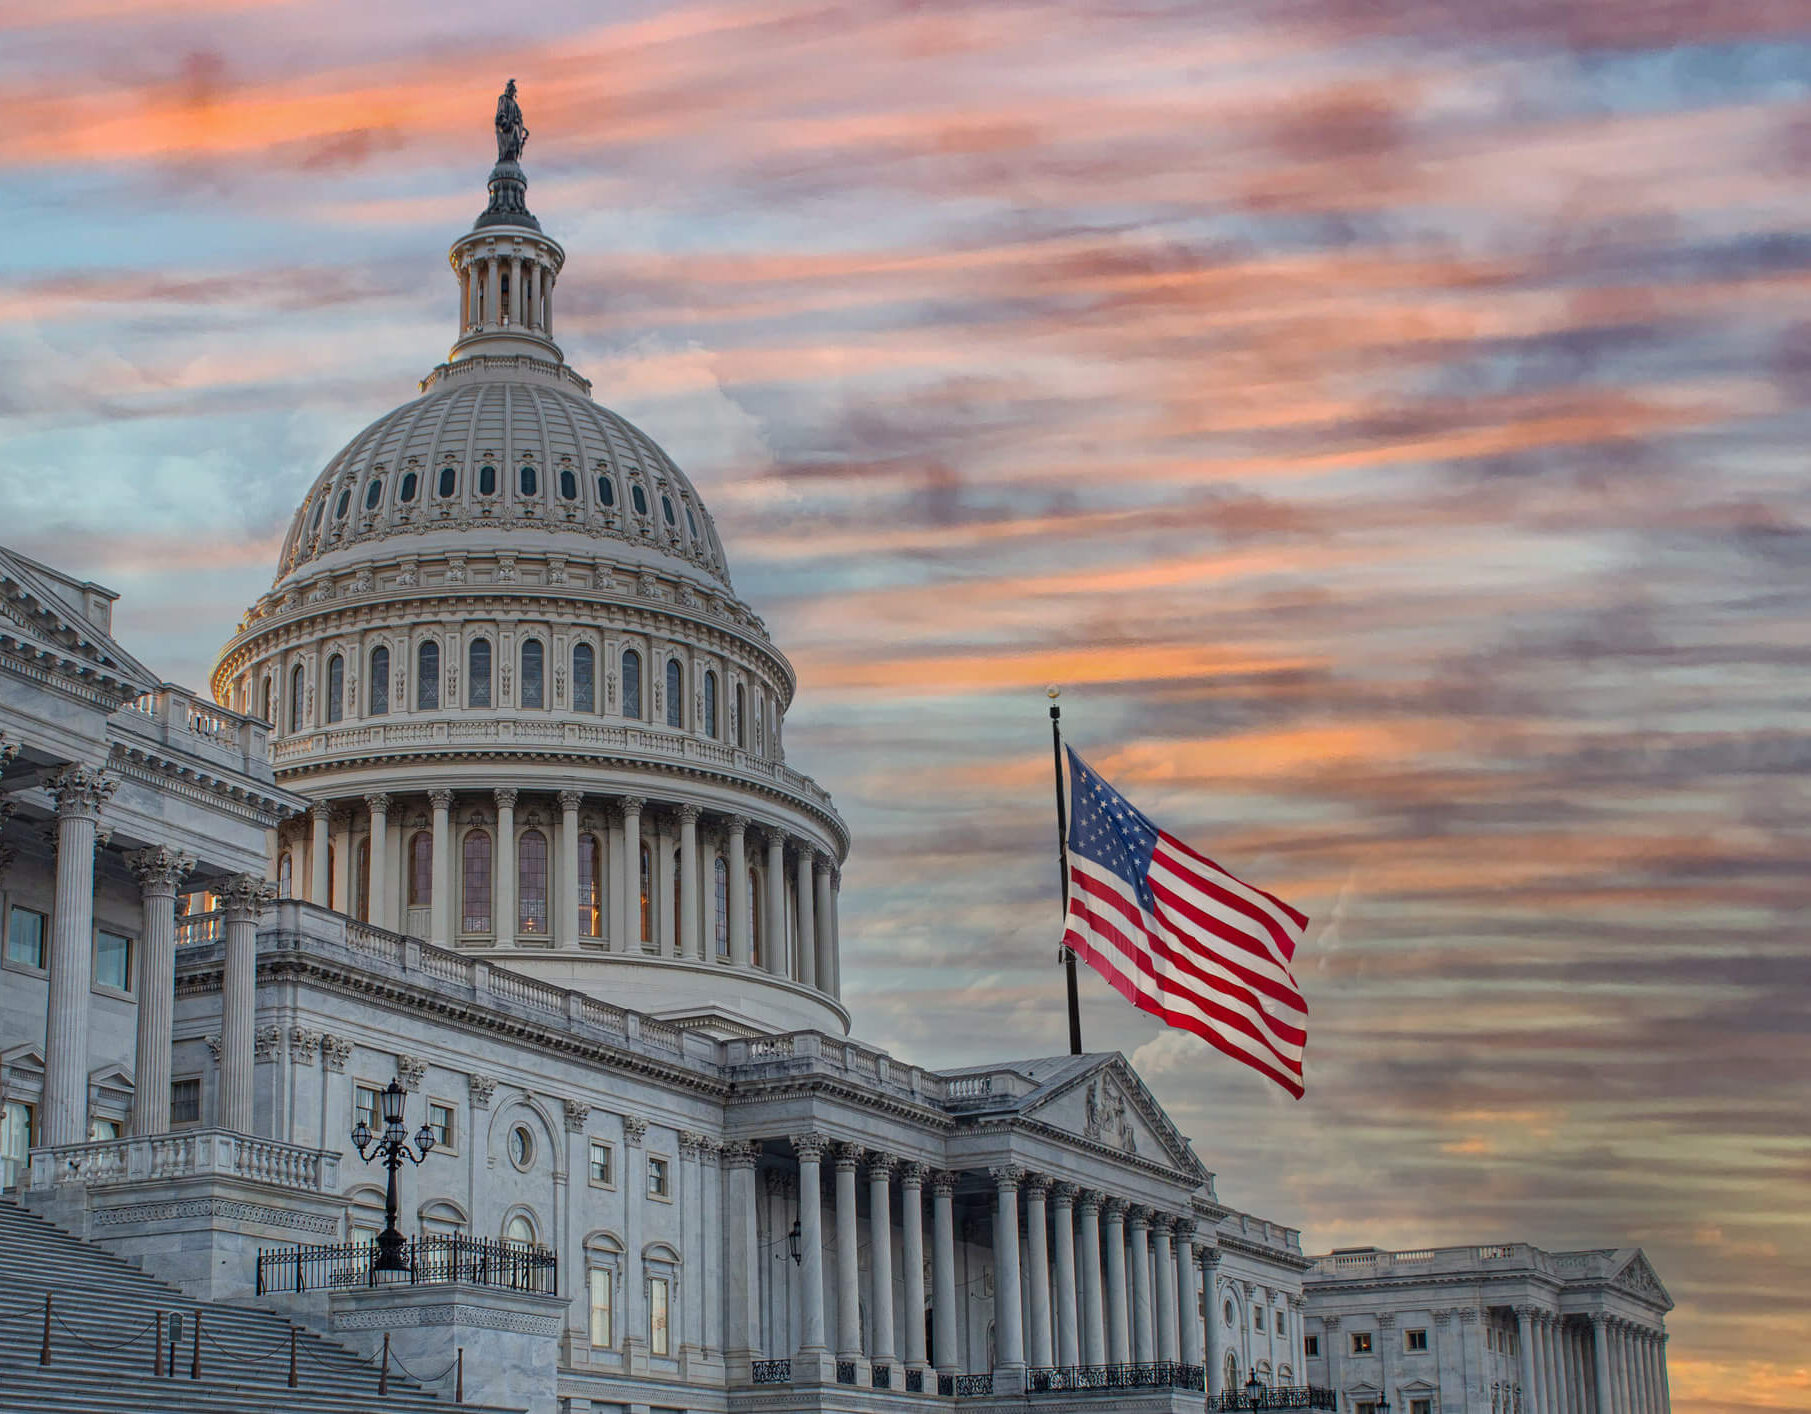 U.S. Capitol building, Washington, D.C. (Douglas Rissing/Getty Images)